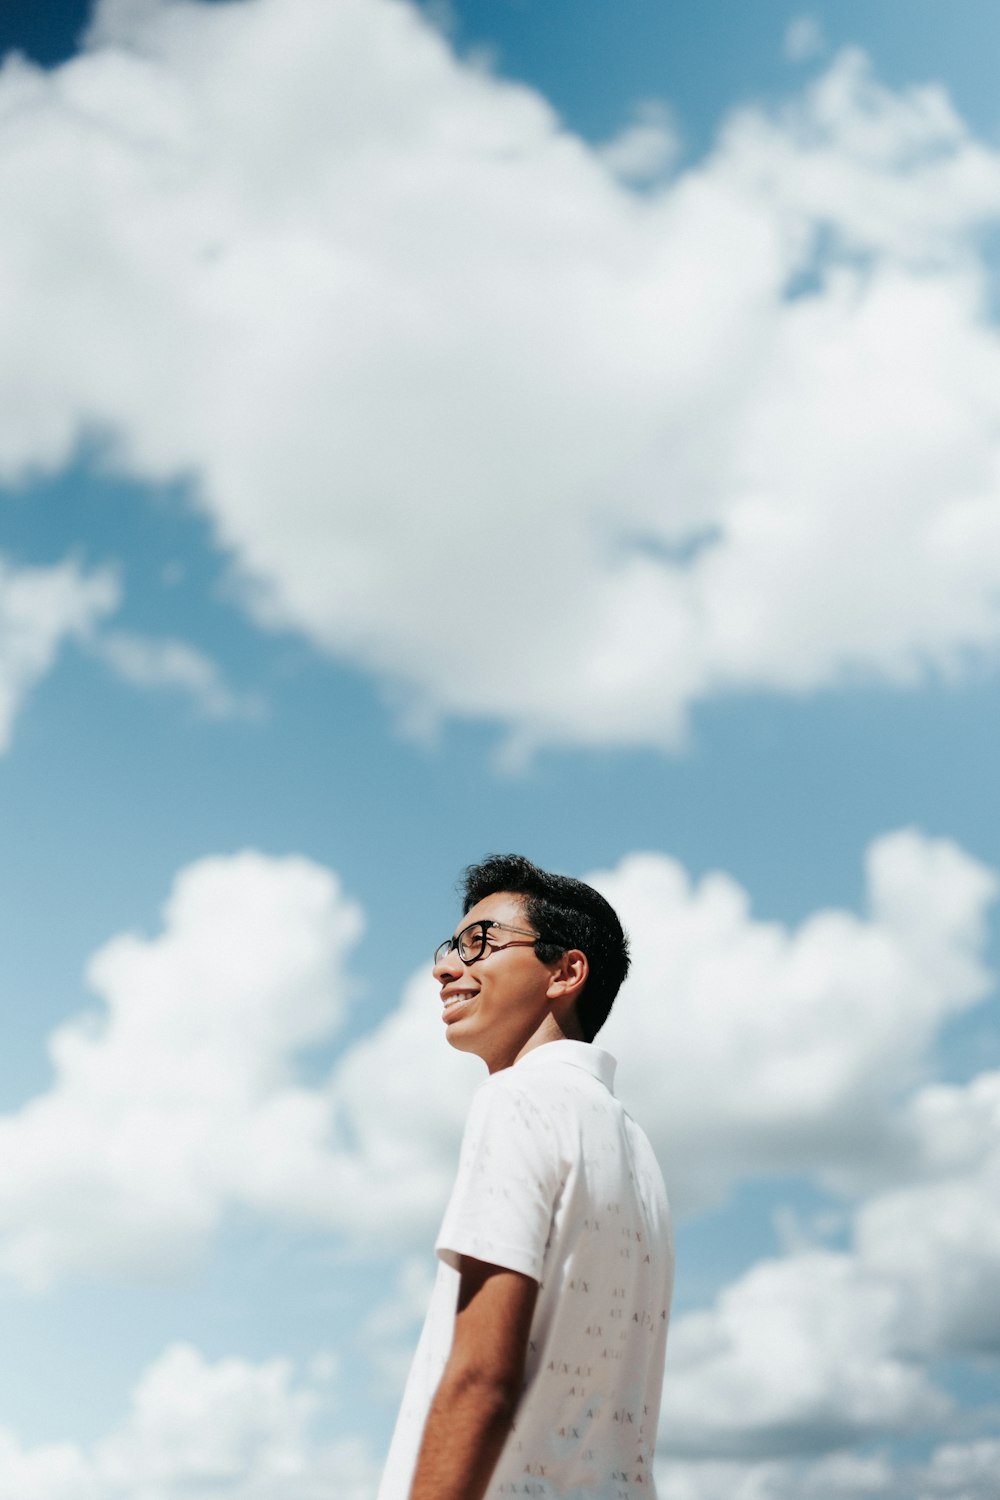 Ein Mann in weißem Hemd und Brille steht unter einem wolkenverhangenen blauen Himmel